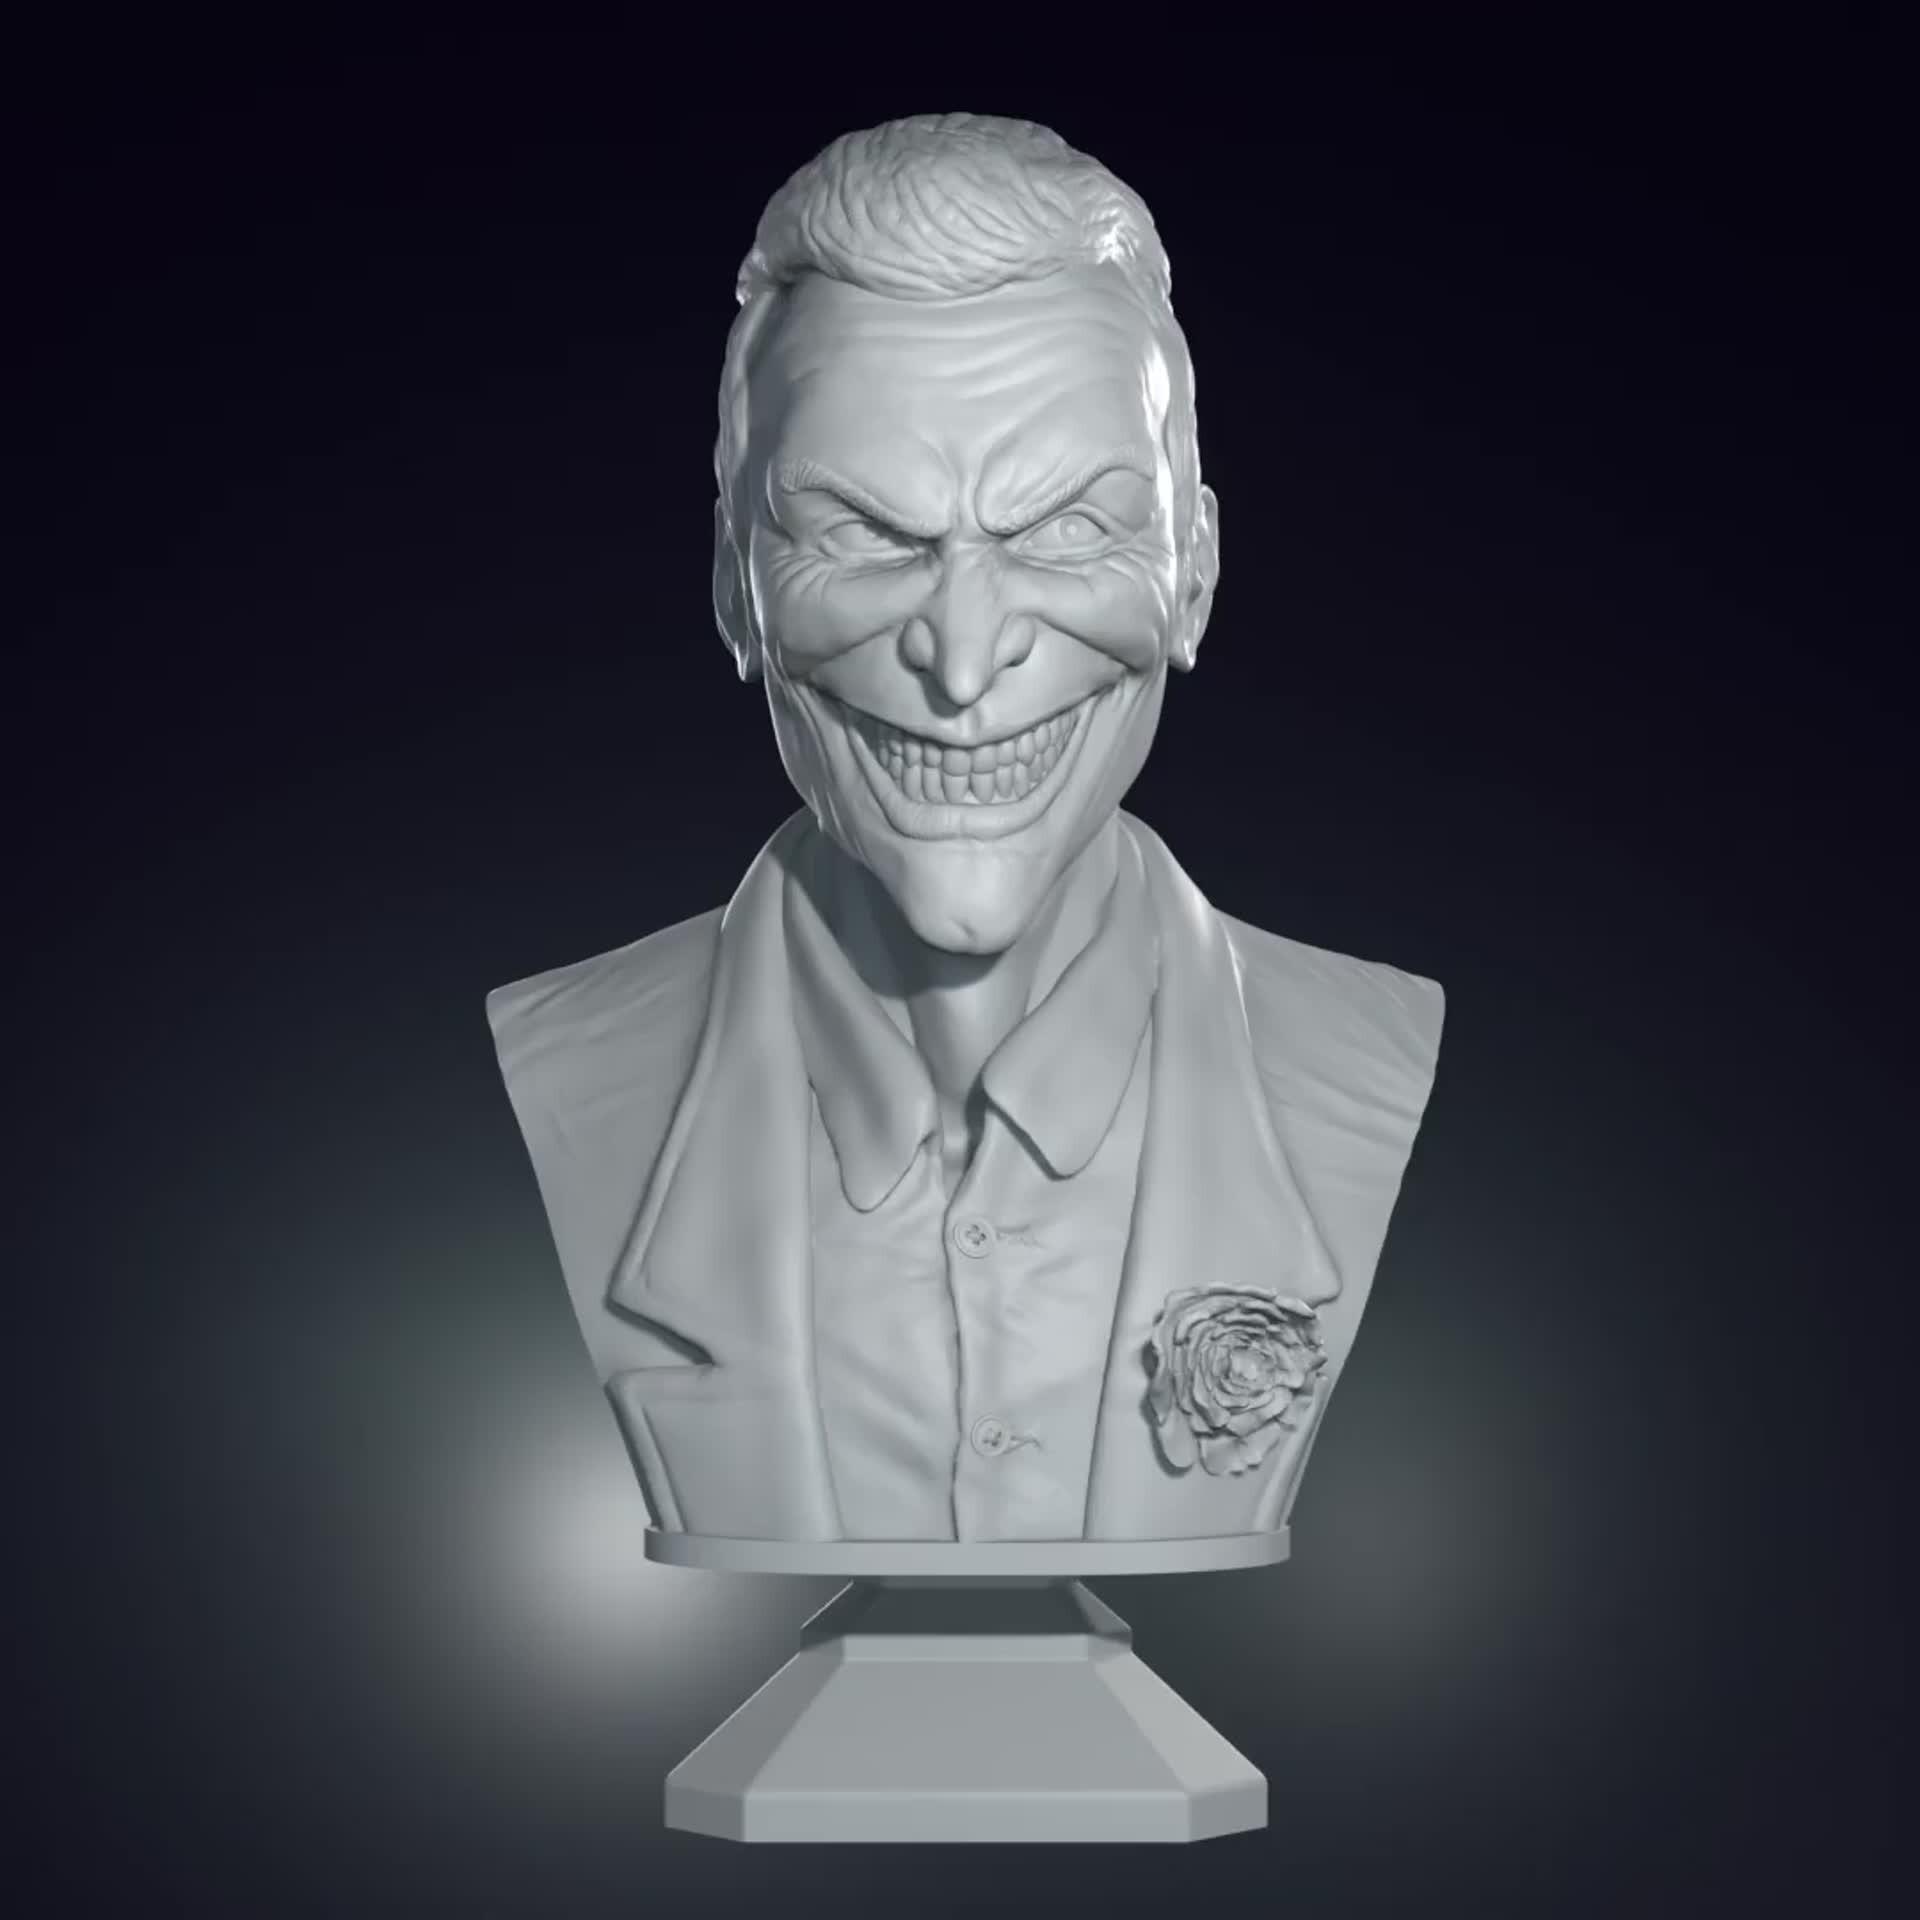 ArtStation - Joker bust for 3d printing